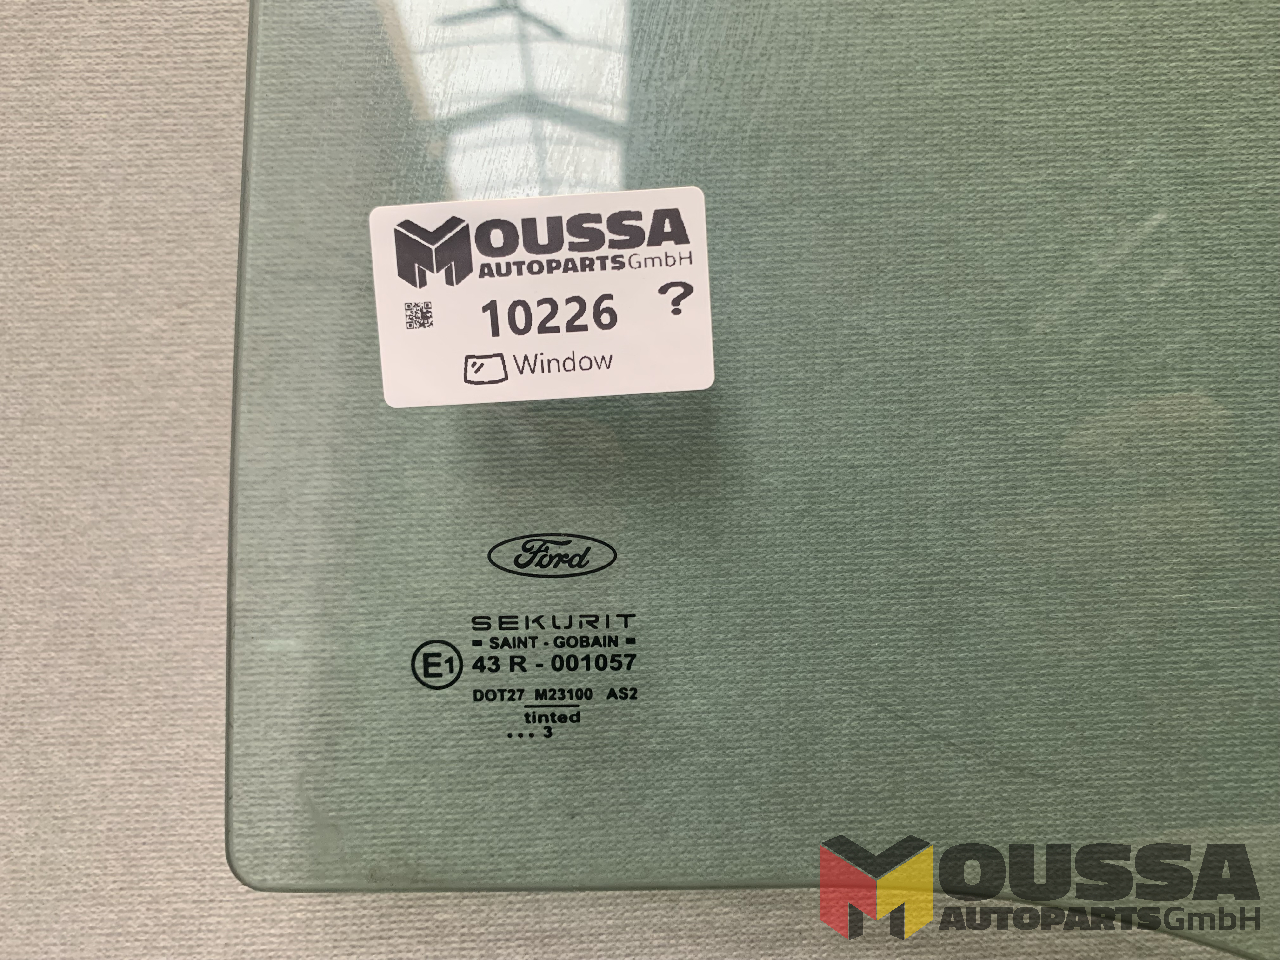 MOUSSA-AUTOPARTS-64919d2b7ba7b.jpg